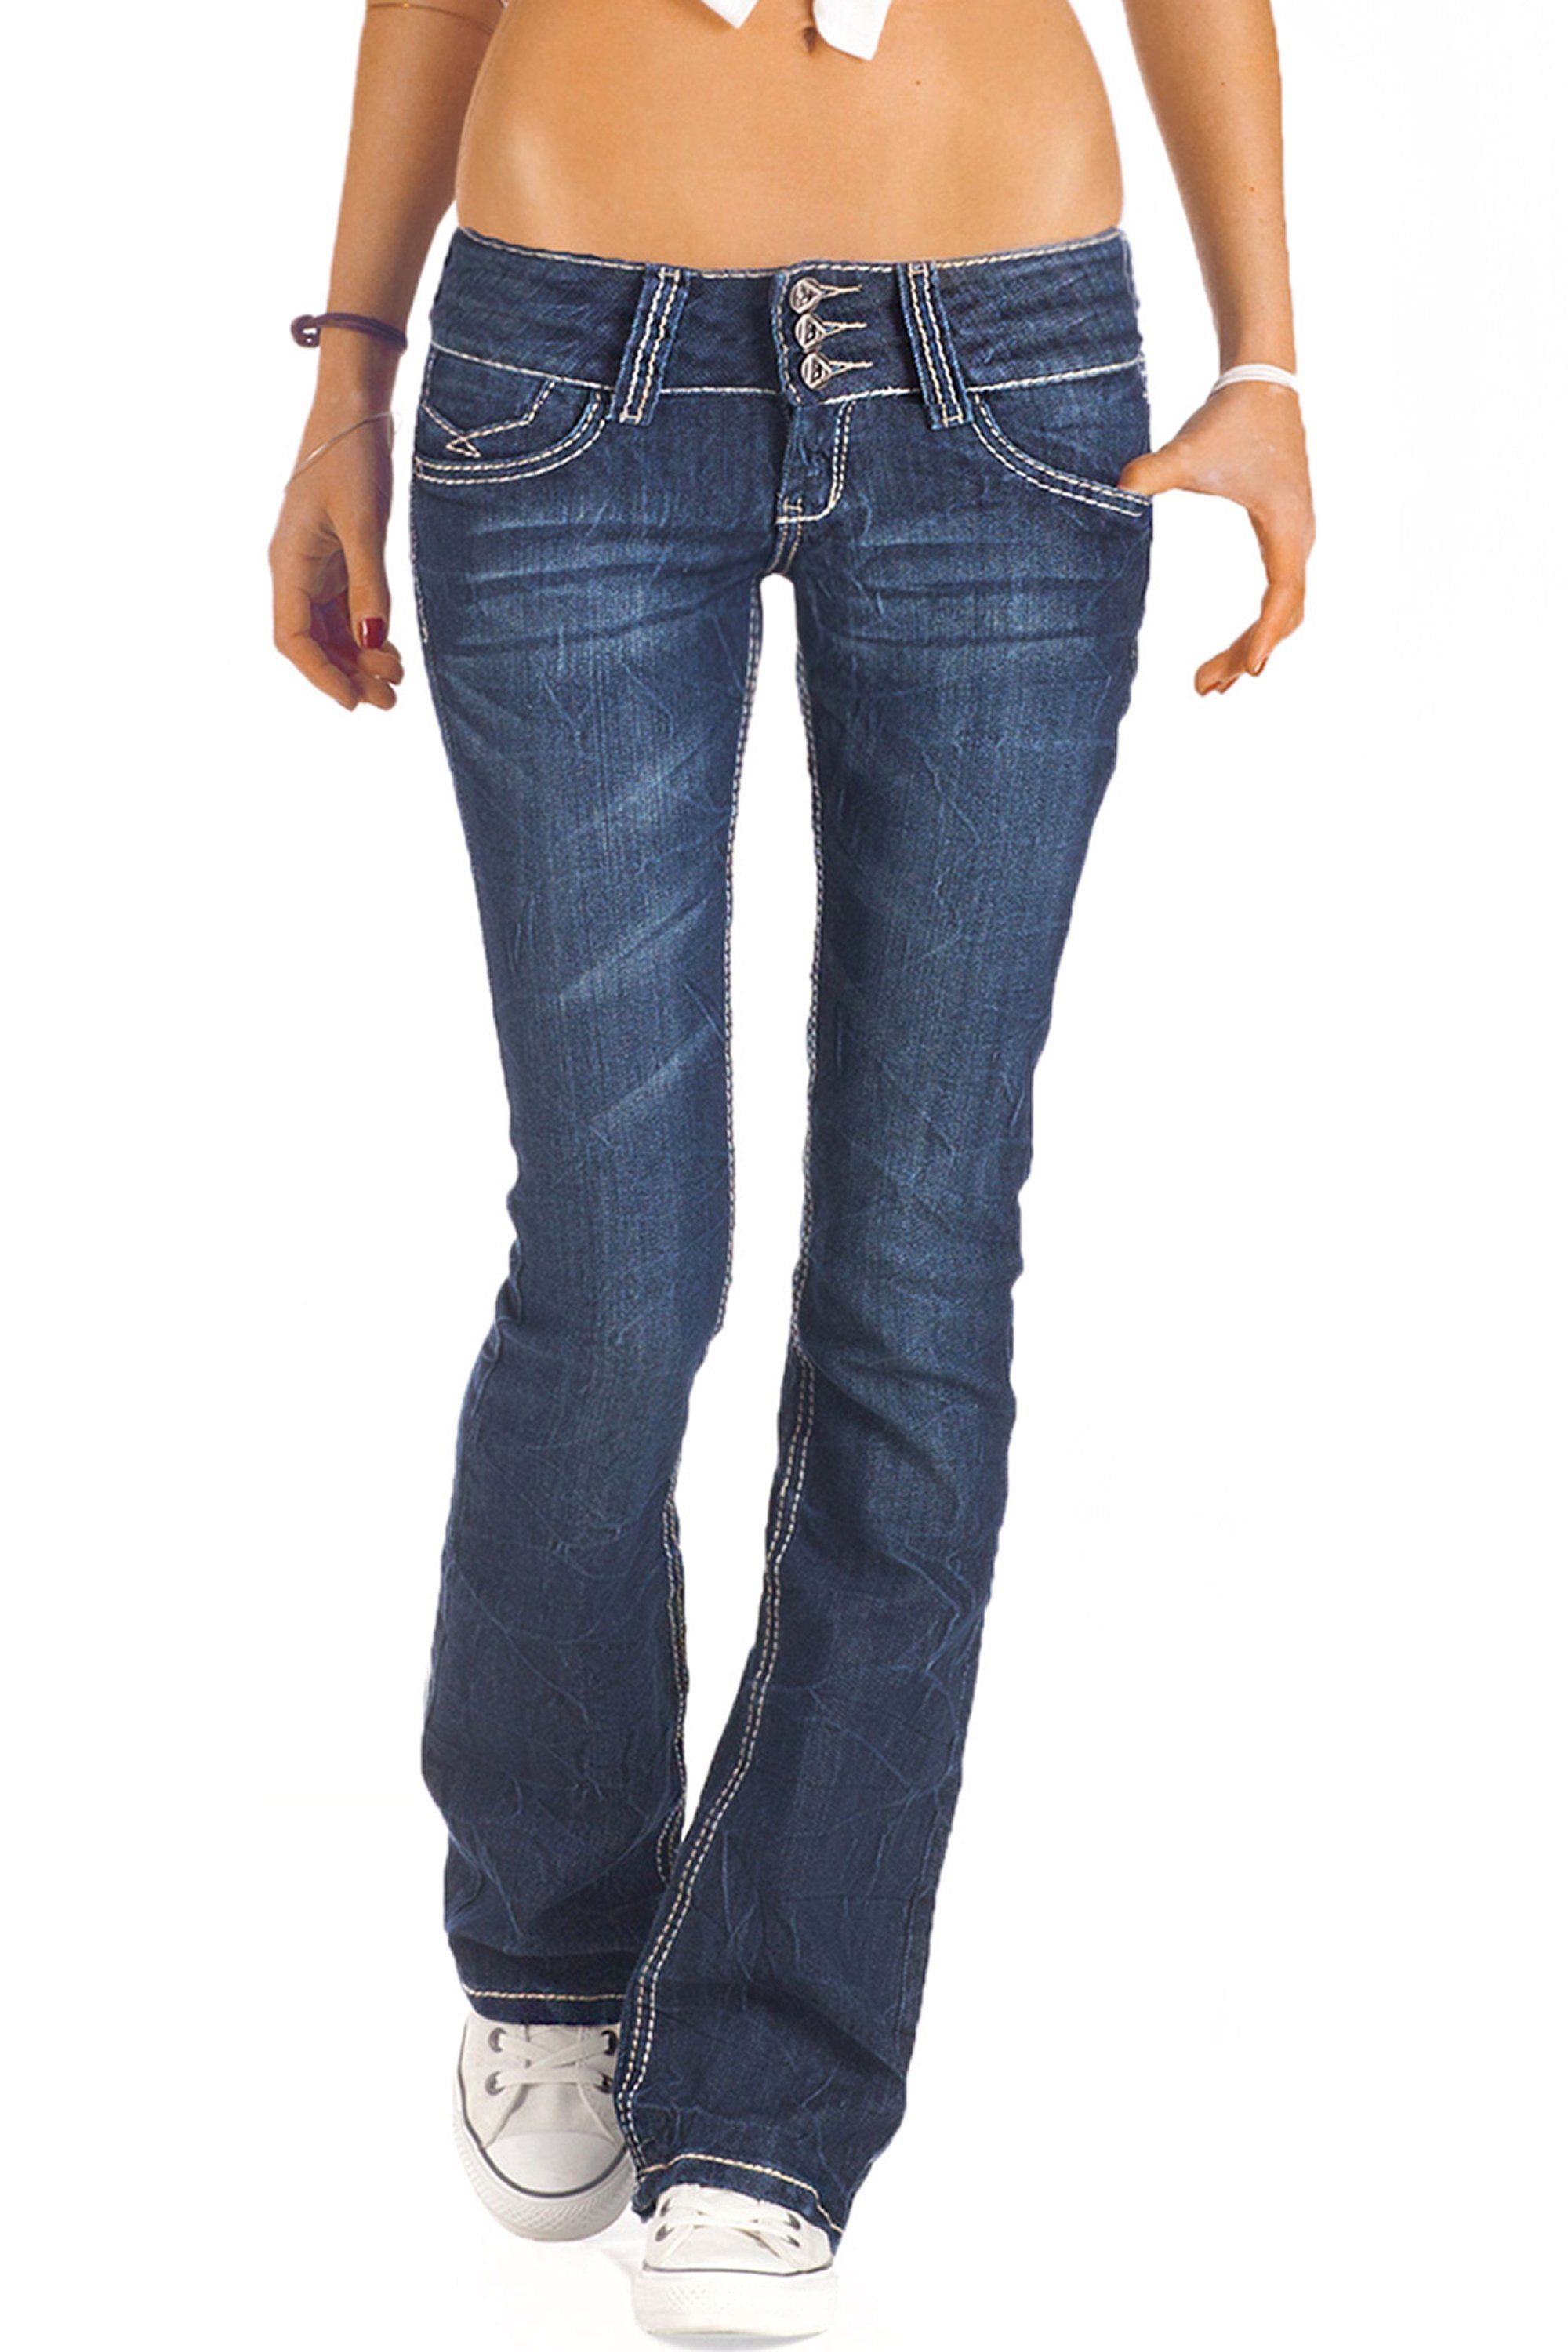 Hüfthosen low Bootcut-Jeans waist j73e Damenjeans, be ausgestellte styled